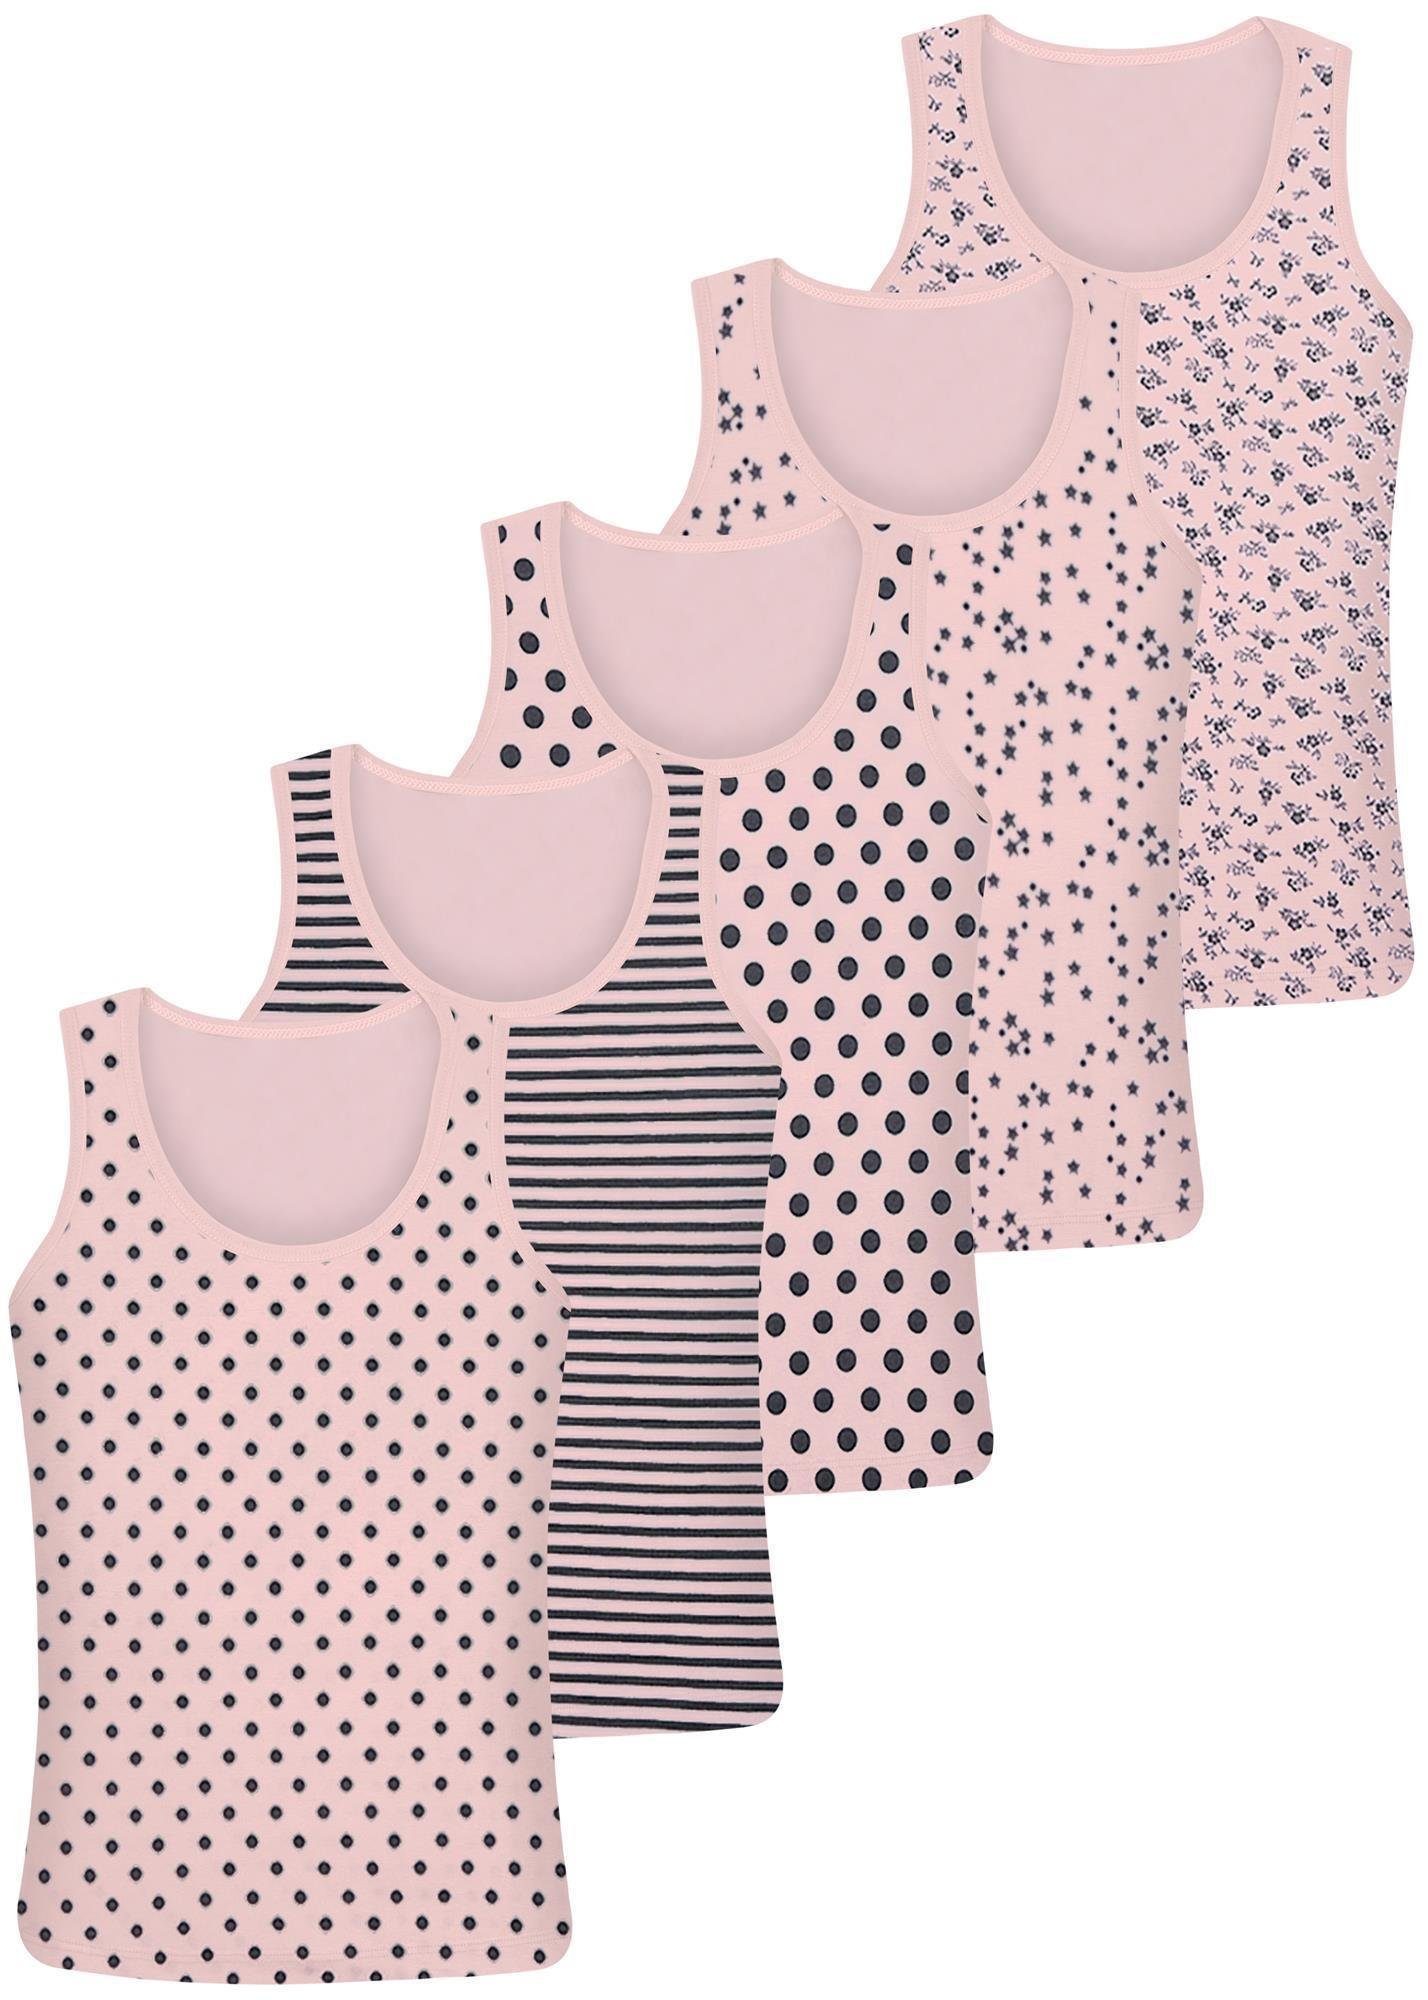 LOREZA Unterhemd 5 Kinder Mädchen Unterhemden Unterwäsche Tank Baumwolle  Gr. 92-170 (Set, 5-St), 5 Pack Mädchen Unterhemden aus hochwertiger  Baumwolle